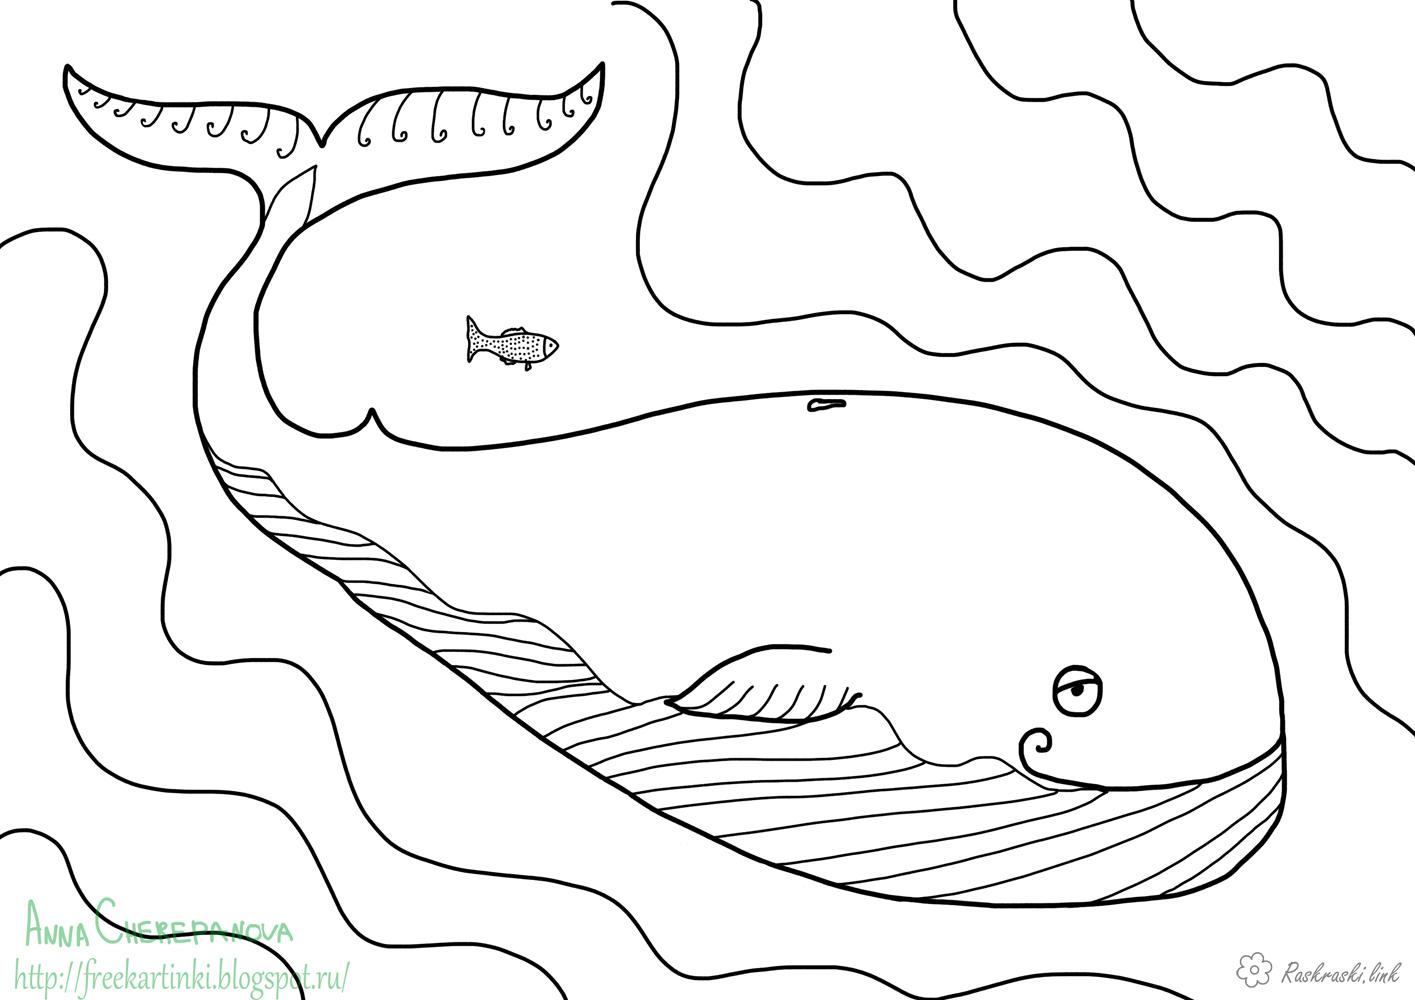  раскраски с китами на тему окружающий мир для мальчиков и девочек.  раскраски с китами для детей и взрослых      